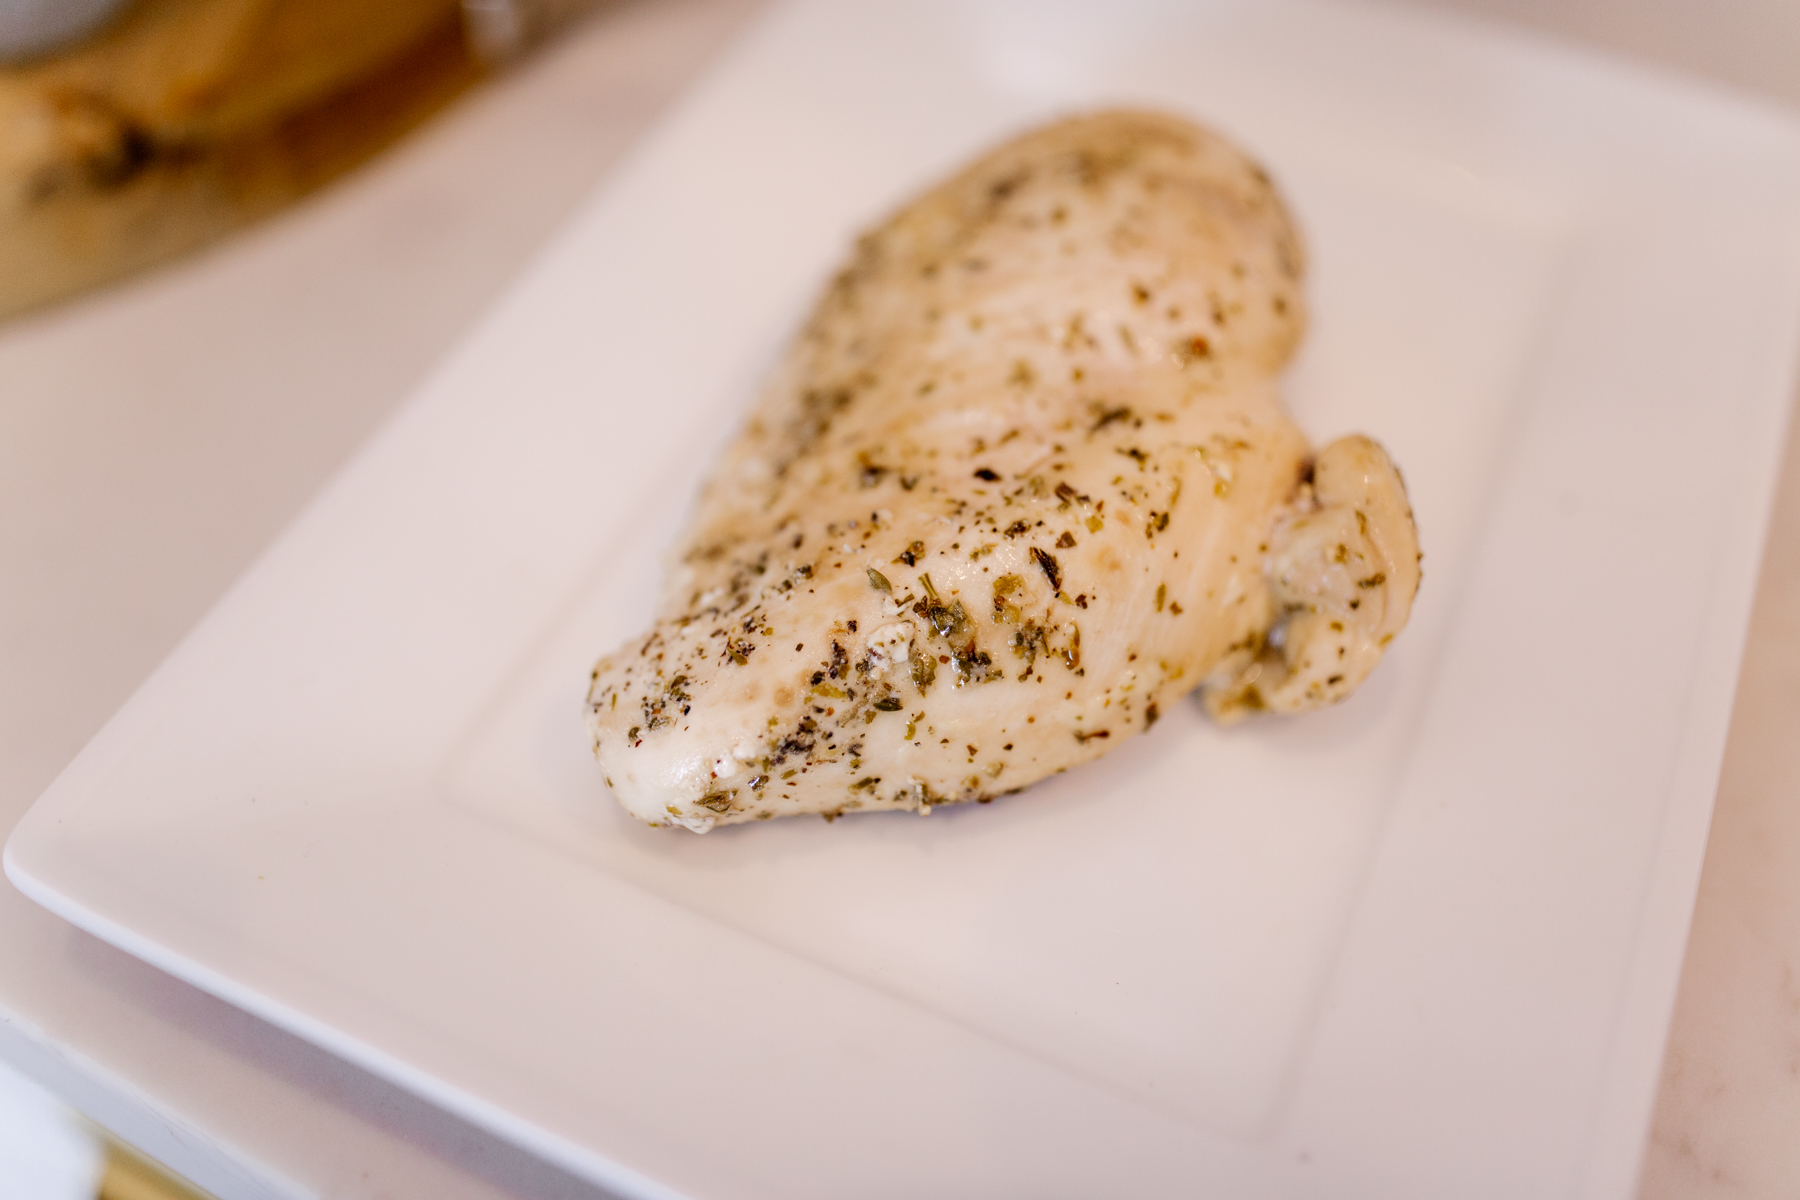 seasoned chicken